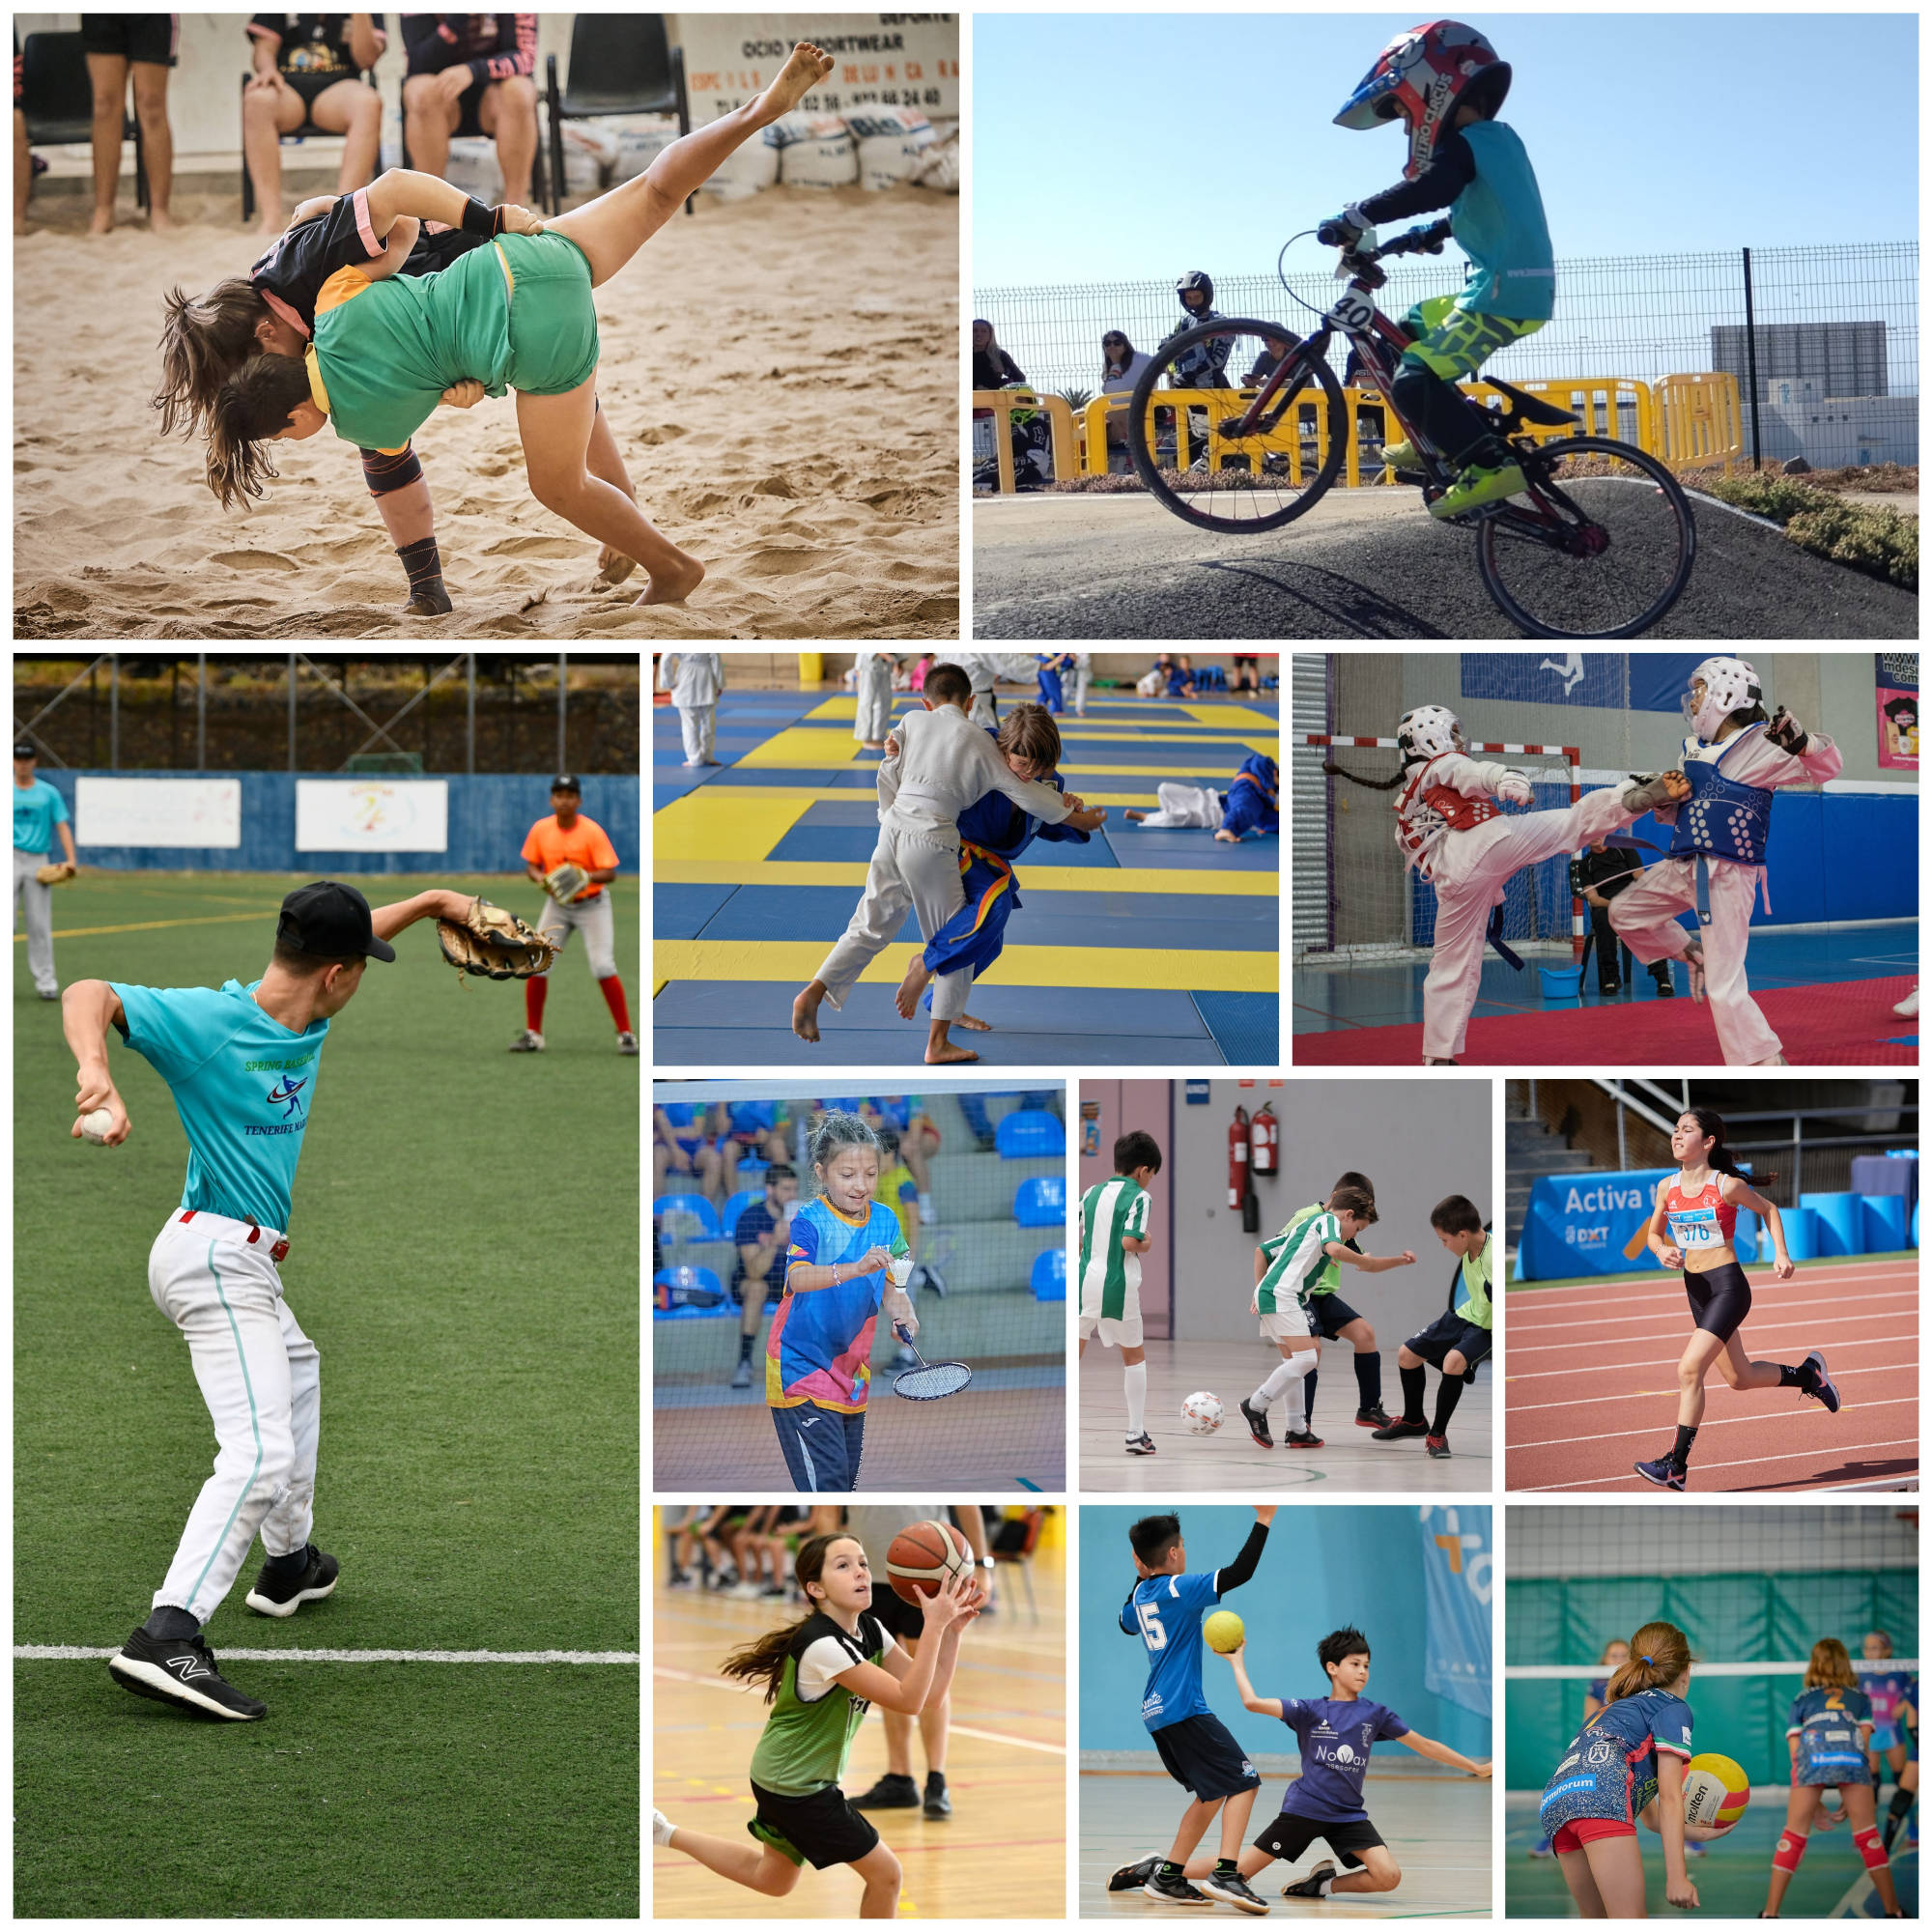 La vigesimoquinta jornada de los Juegos Cabildo movilizará casi dos mil jóvenes en once modalidades deportivas